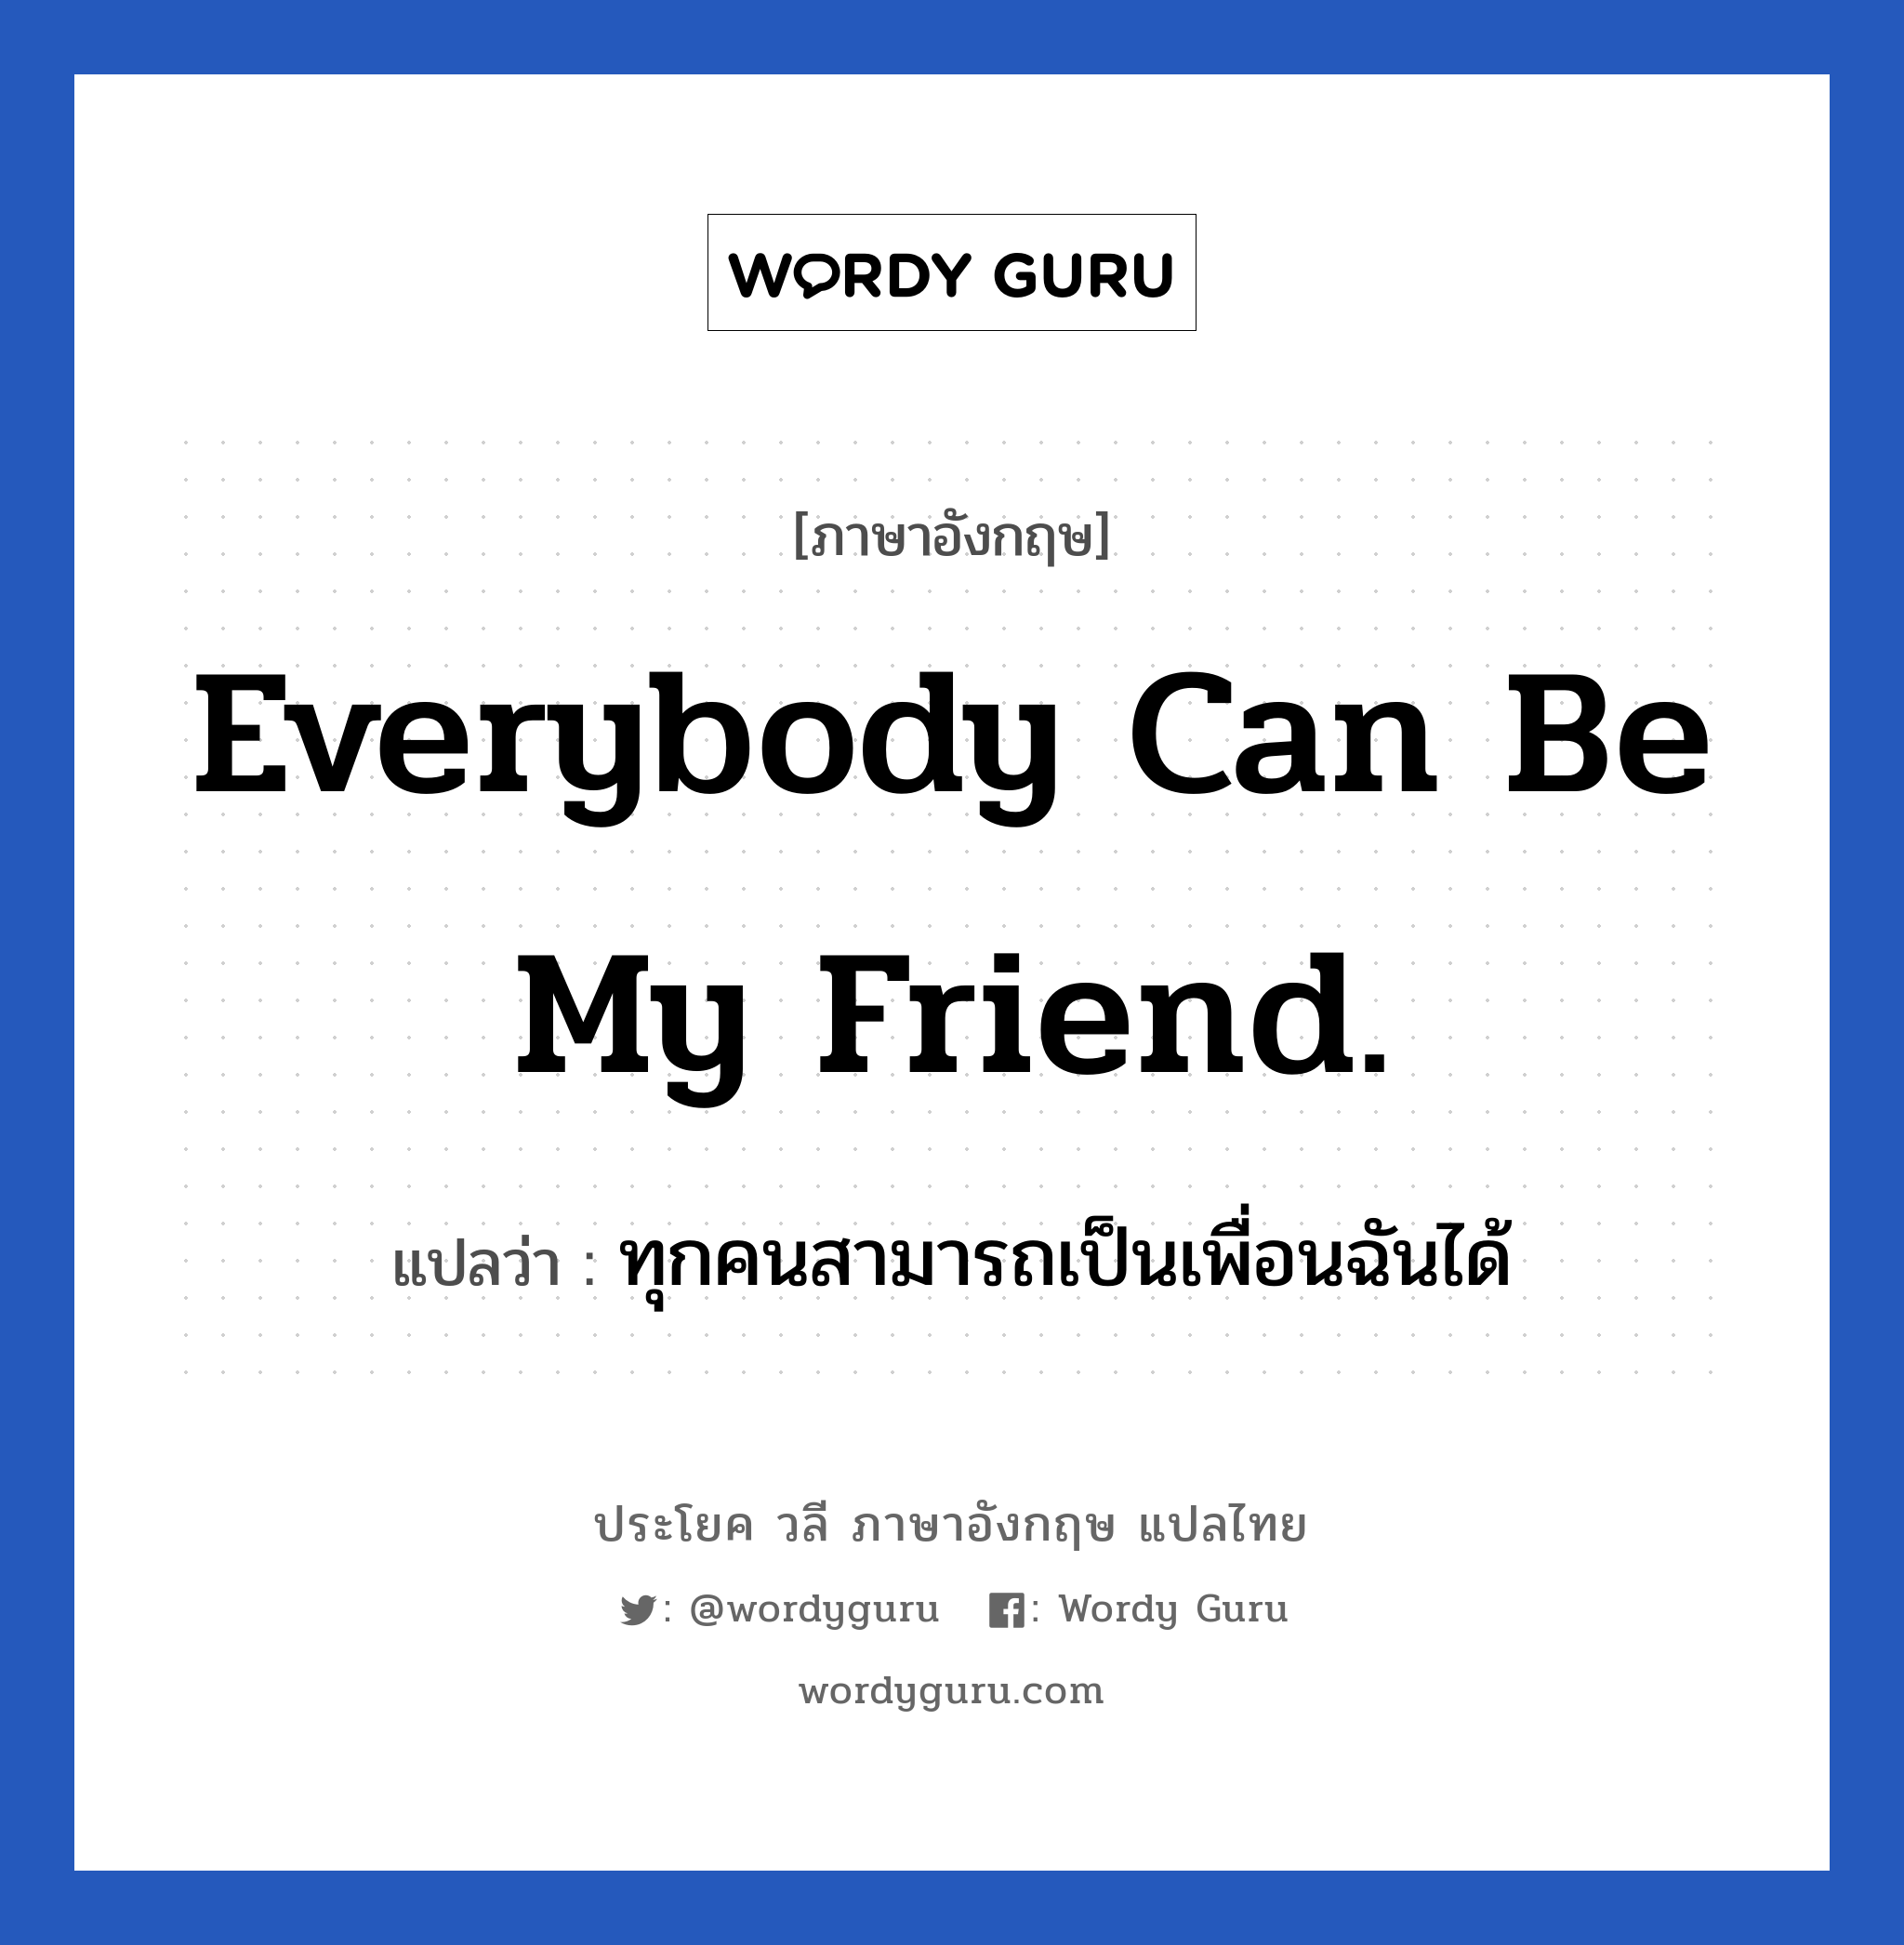 ทุกคนสามารถเป็นเพื่อนฉันได้ ภาษาอังกฤษ?, วลีภาษาอังกฤษ ทุกคนสามารถเป็นเพื่อนฉันได้ แปลว่า Everybody can be my friend.